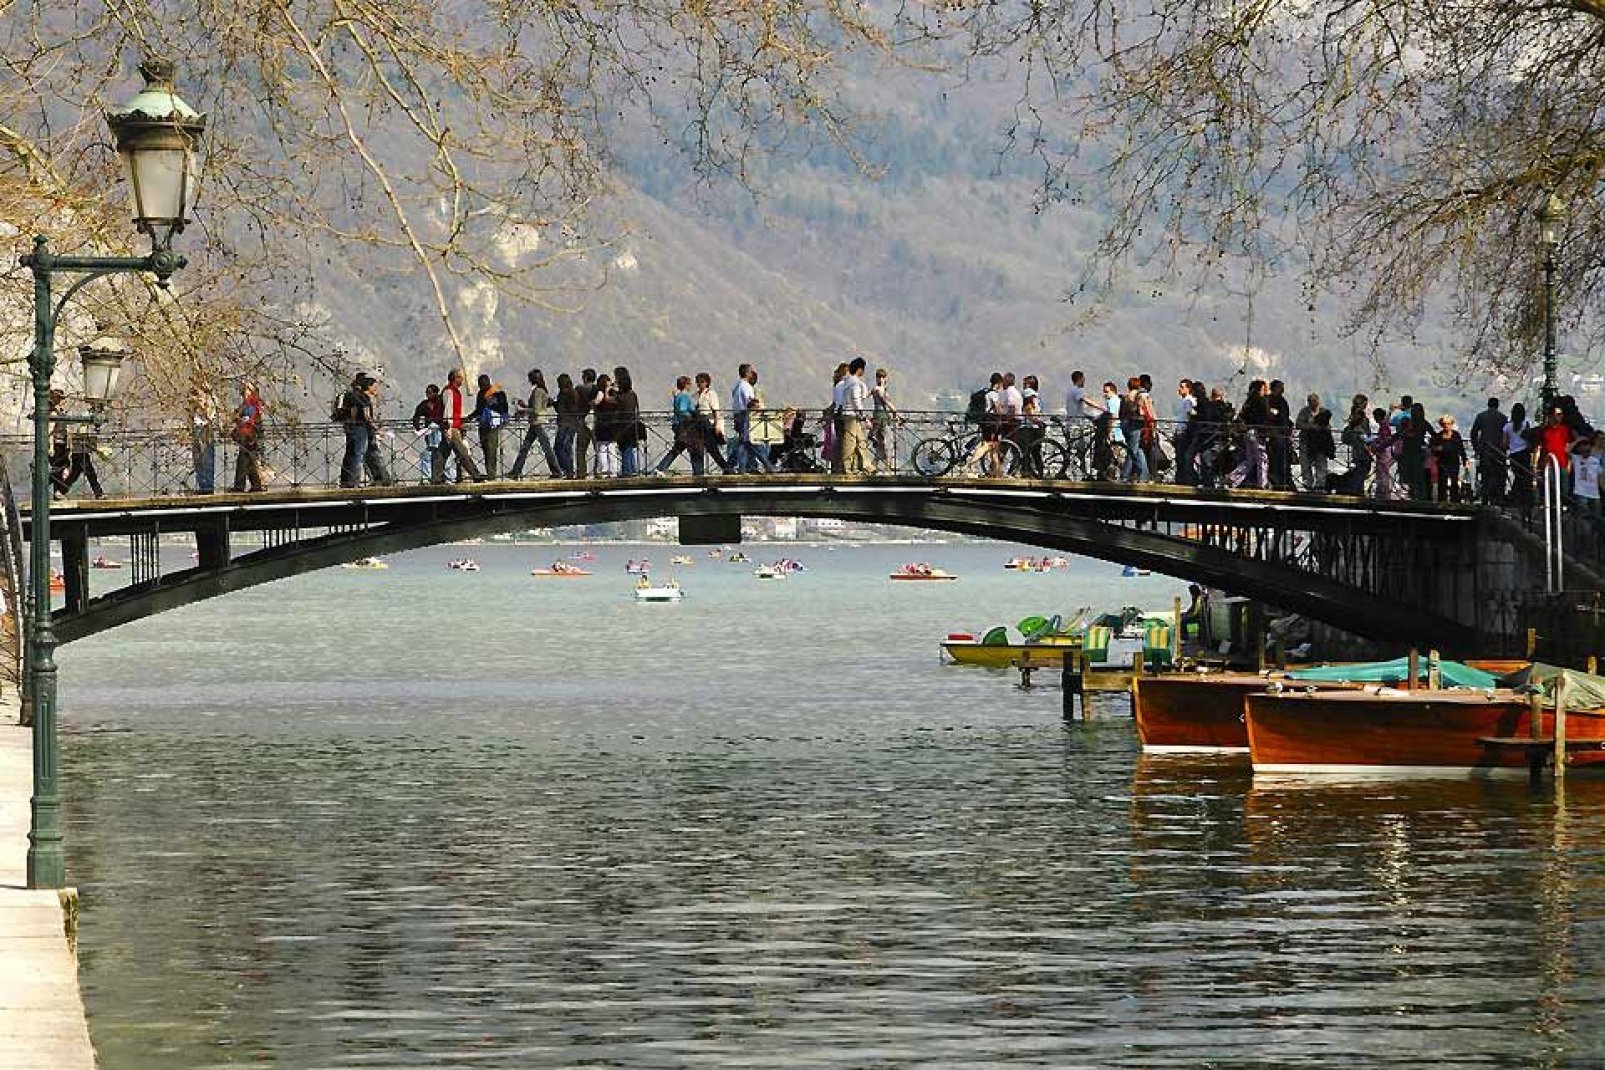 Es una pasarela situada junto al lago de Annecy, a la entrada del canal de Vassé. La leyenda cuenta que dos enamorados que se den un beso en medio del puente estarán unidos de por vida.